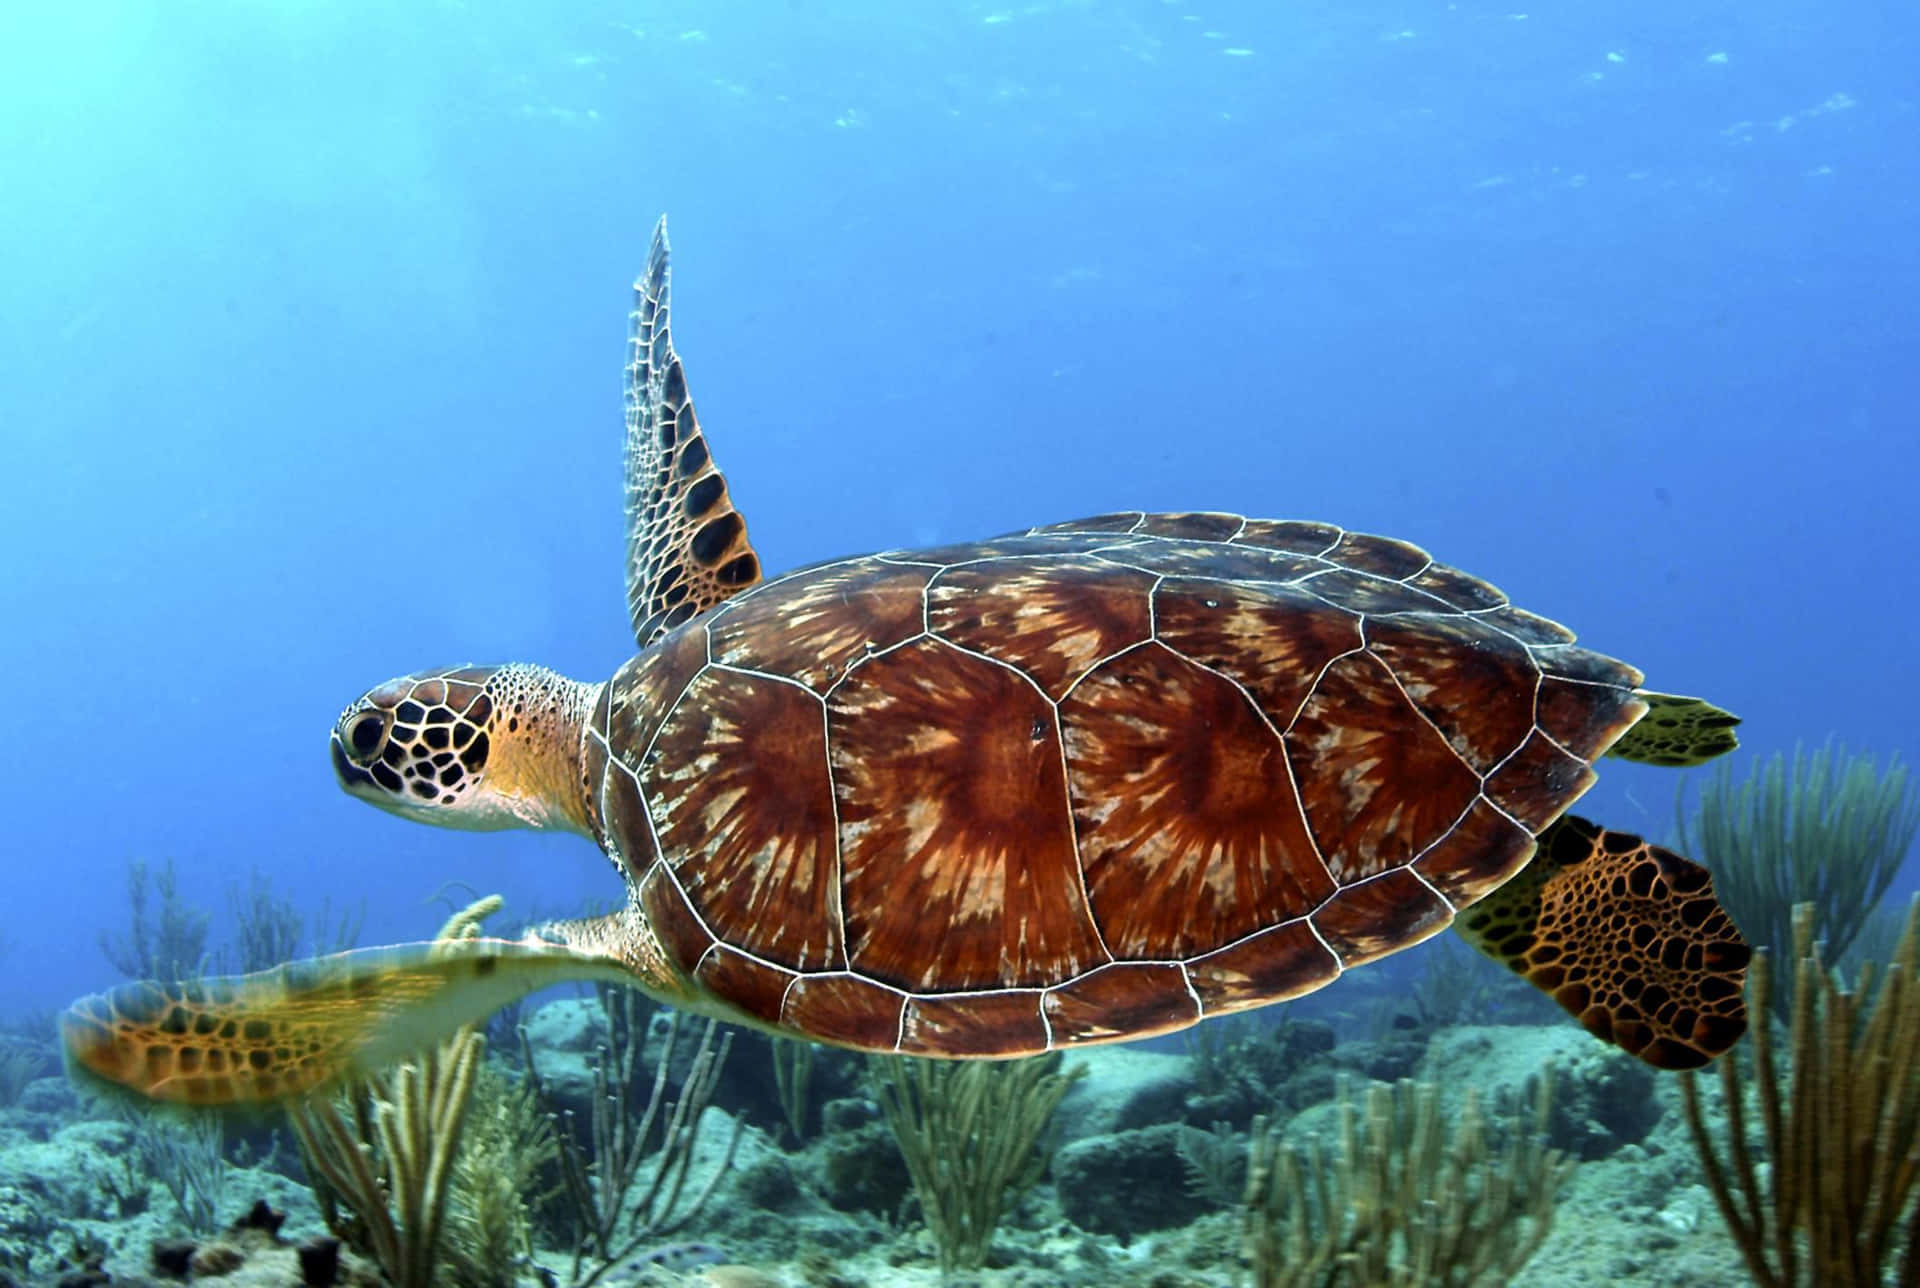 Einewunderschöne Meeresschildkröte Gleitet Durch Einen Ruhigen Ozean.